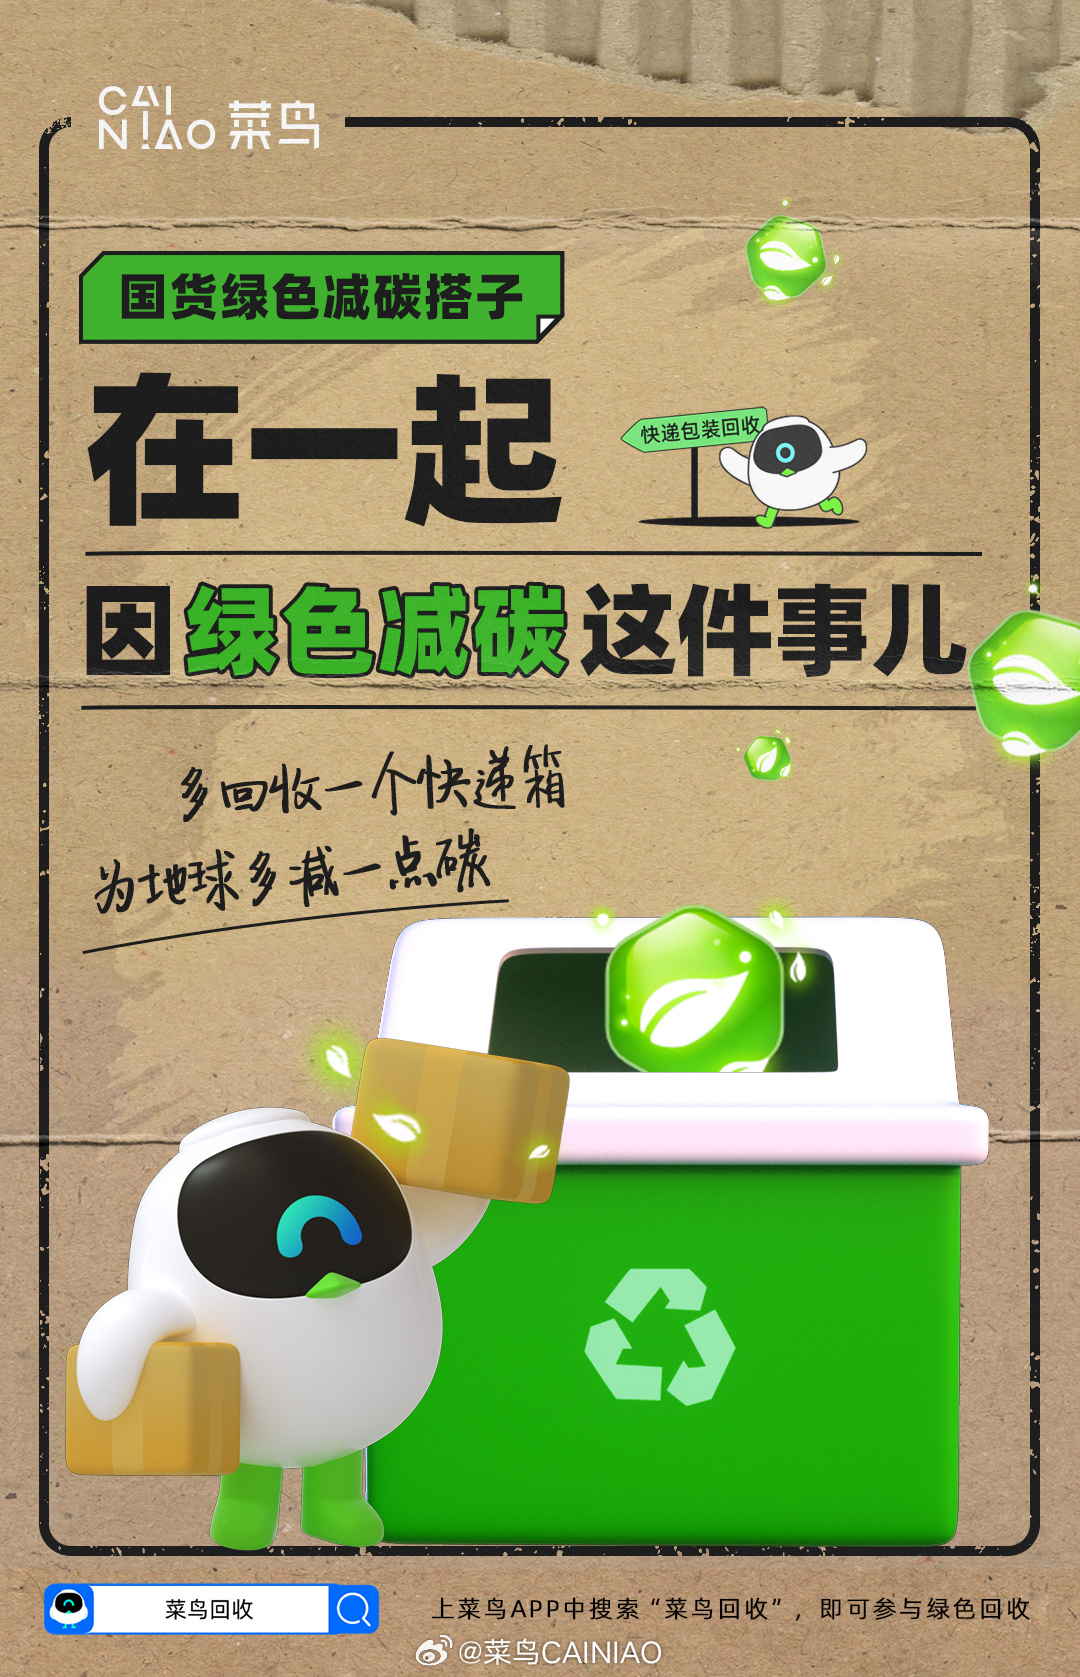 菜鸟双 11 升级绿色回收